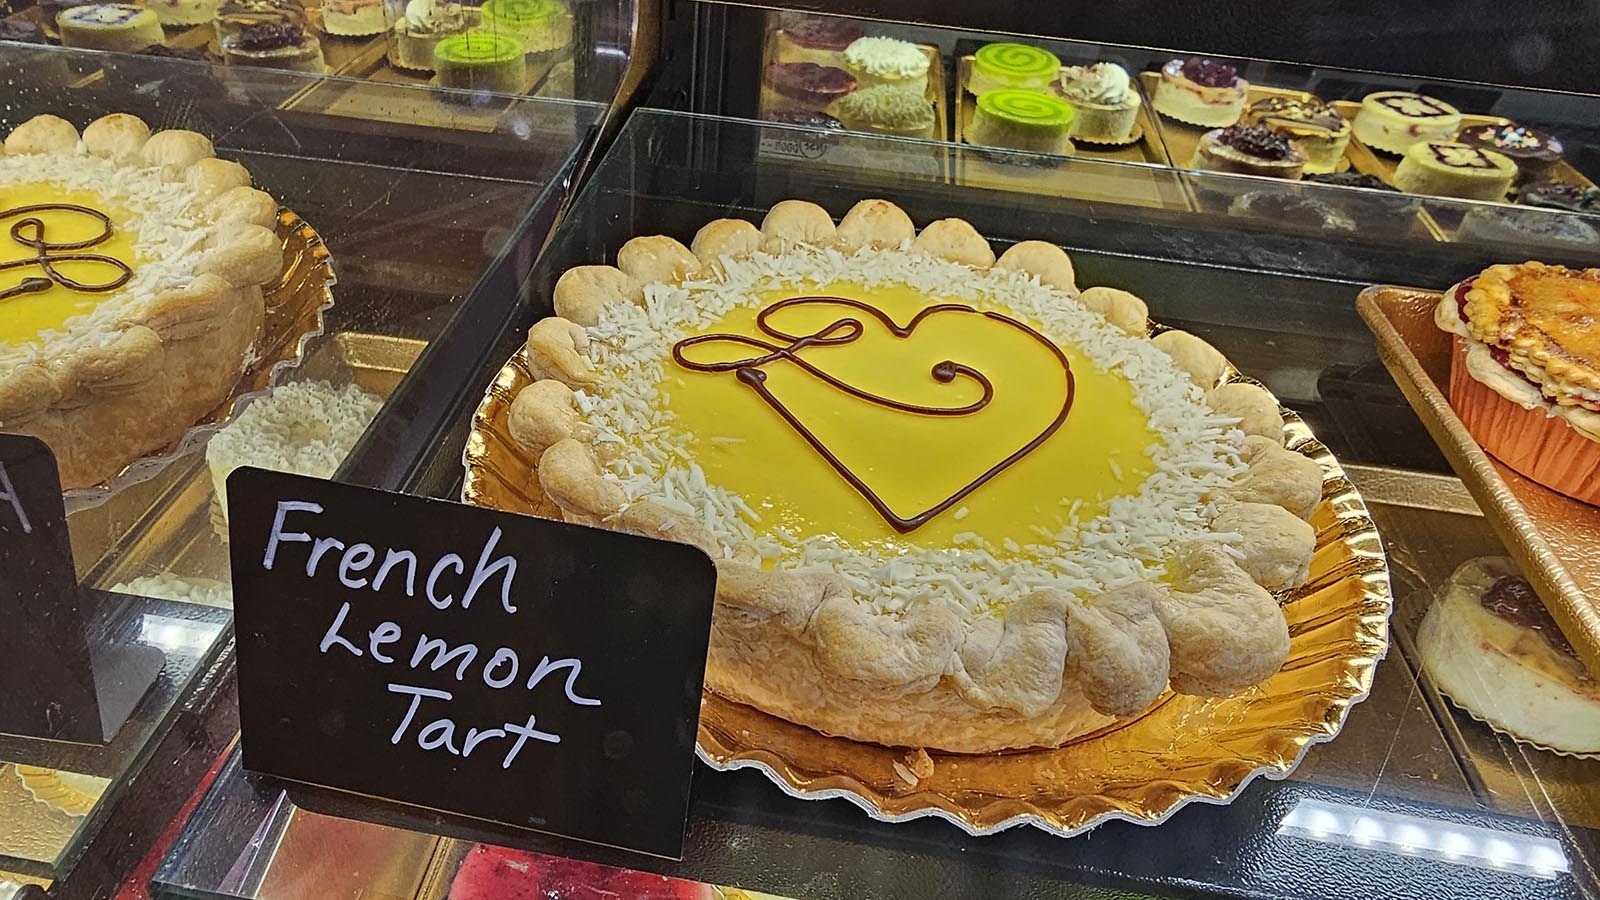 How about a French lemon tart? Oui, oui!